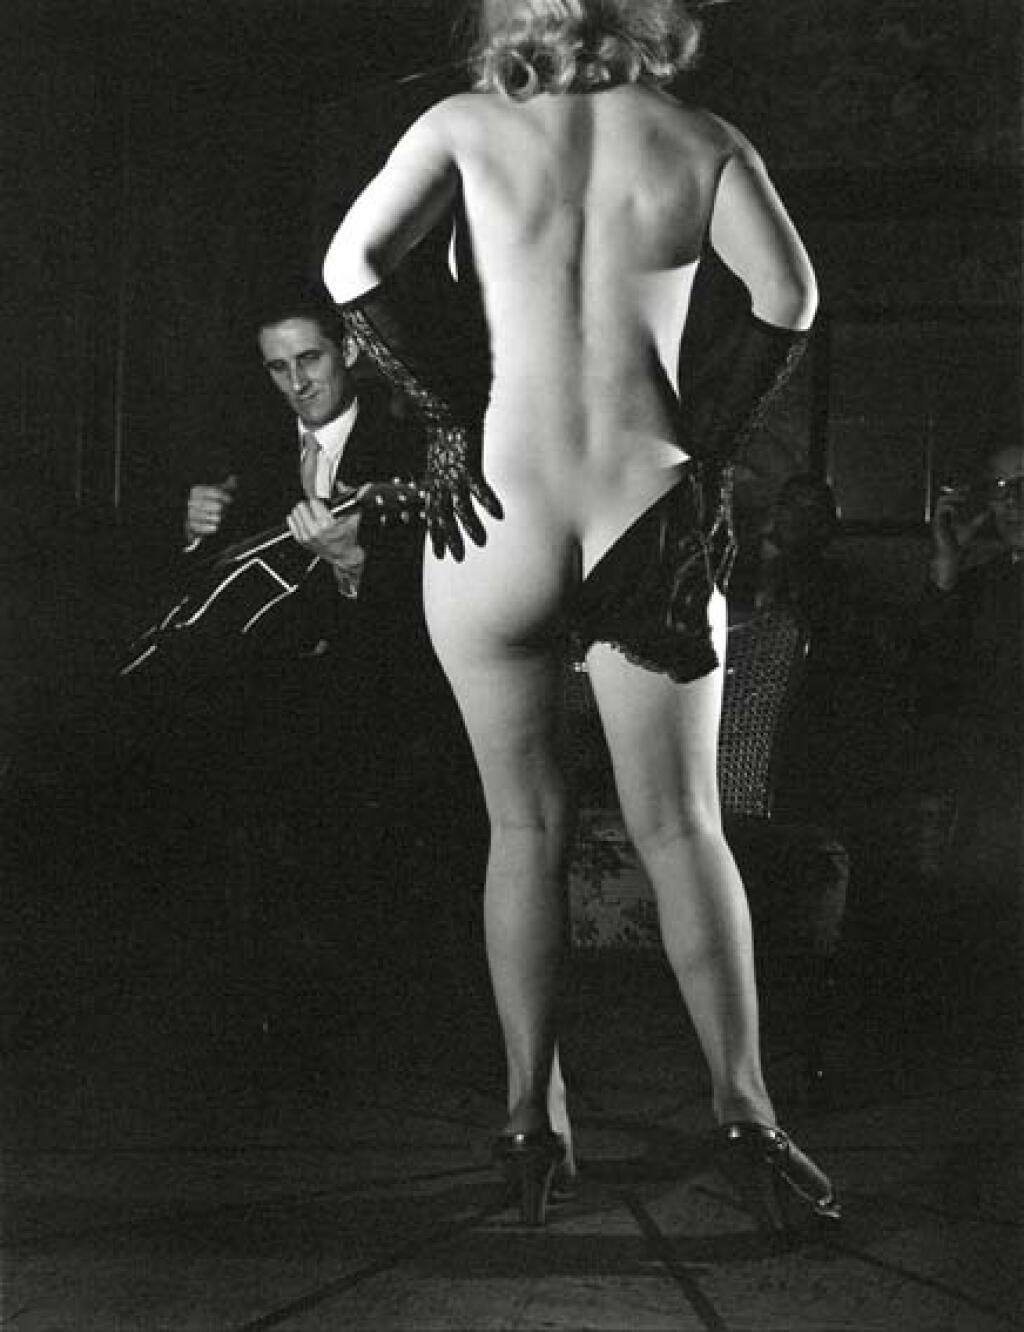 Vintage strippers